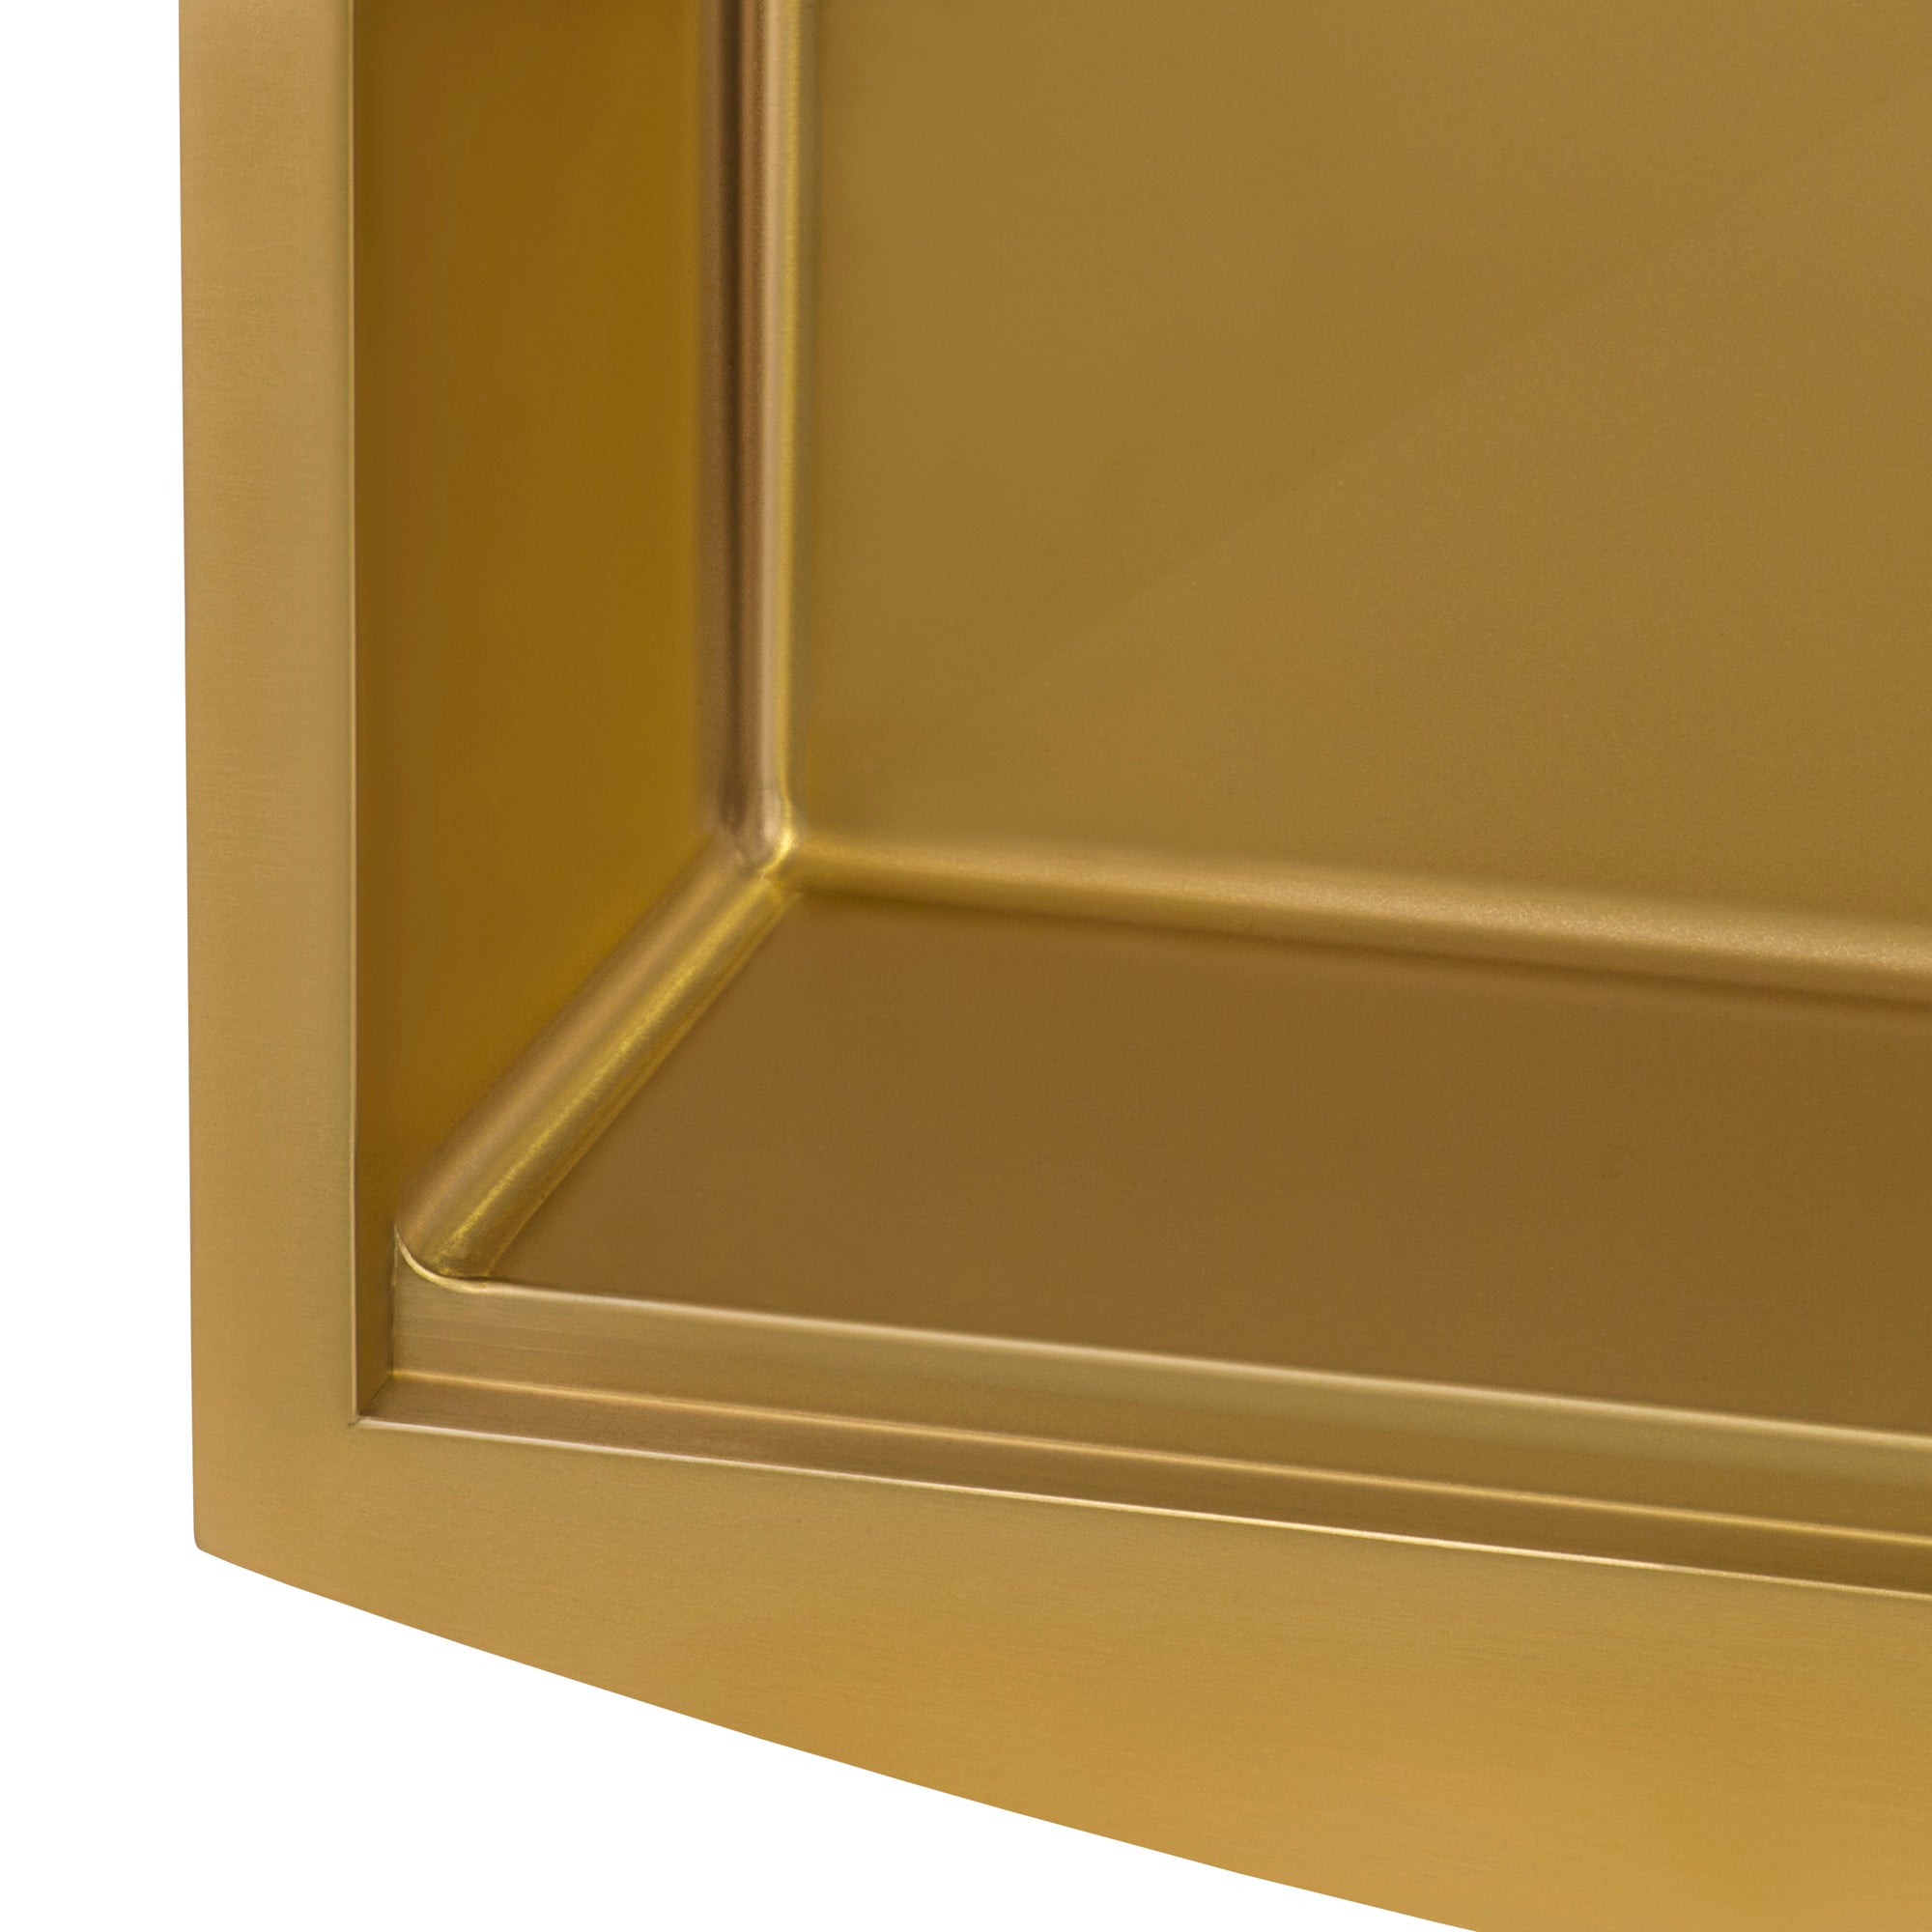 Ruvati 33-inch Matte Gold Workstation Apron-Front Brass Tone Stainless Steel Kitchen Sink – RVH9207GG